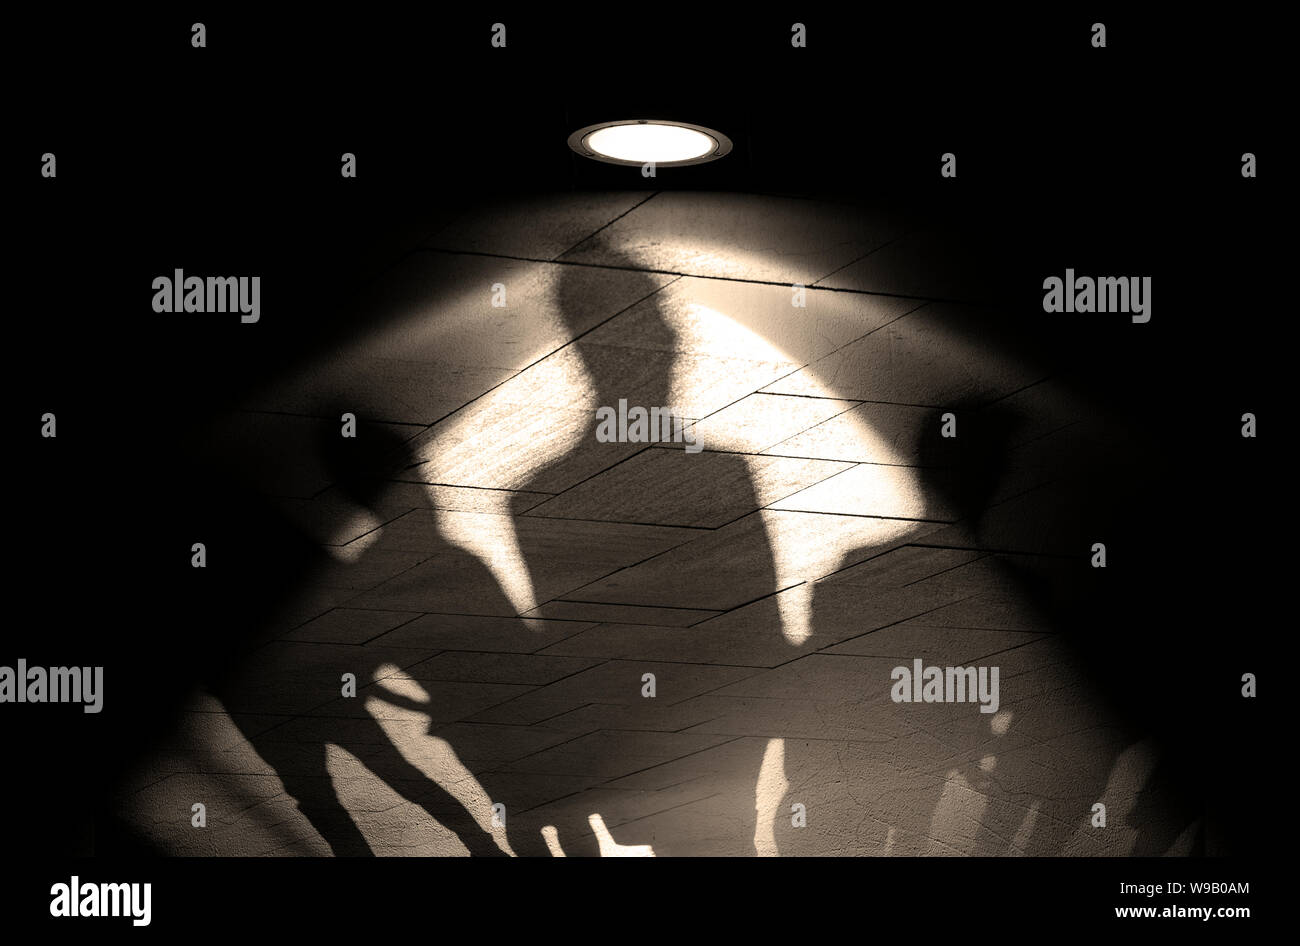 Gruppe von Menschen, Silhouetten und Schatten an der Wand, Licht der Lampe oder Flutlicht auf der alten Mauer mit Schatten, Konzept Bild Stockfoto